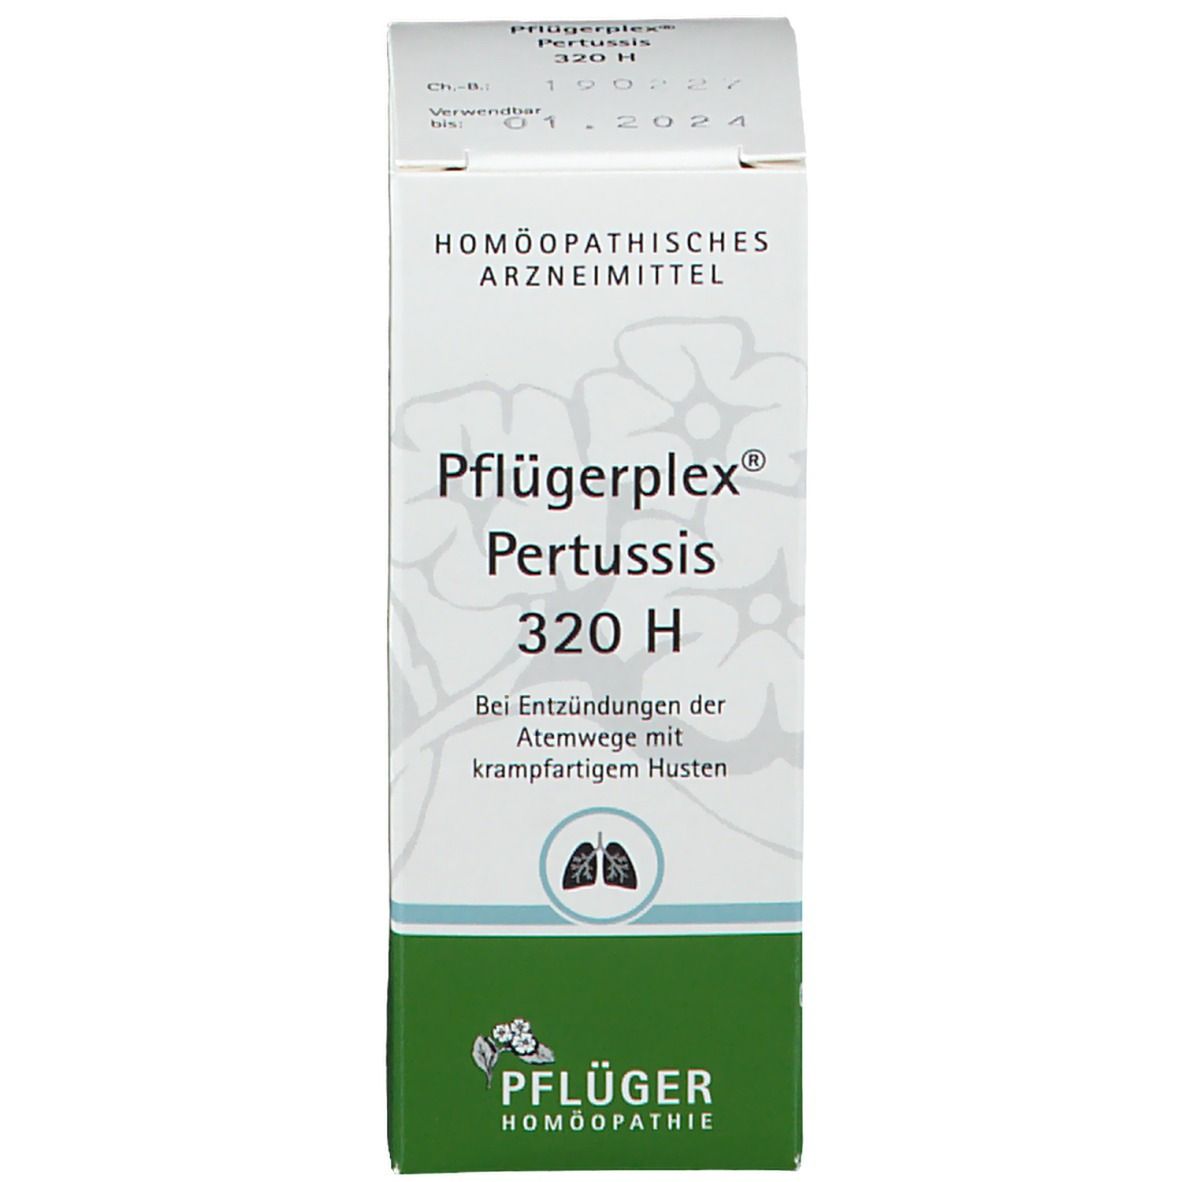 Pflügerplex® Pertussis 320 H